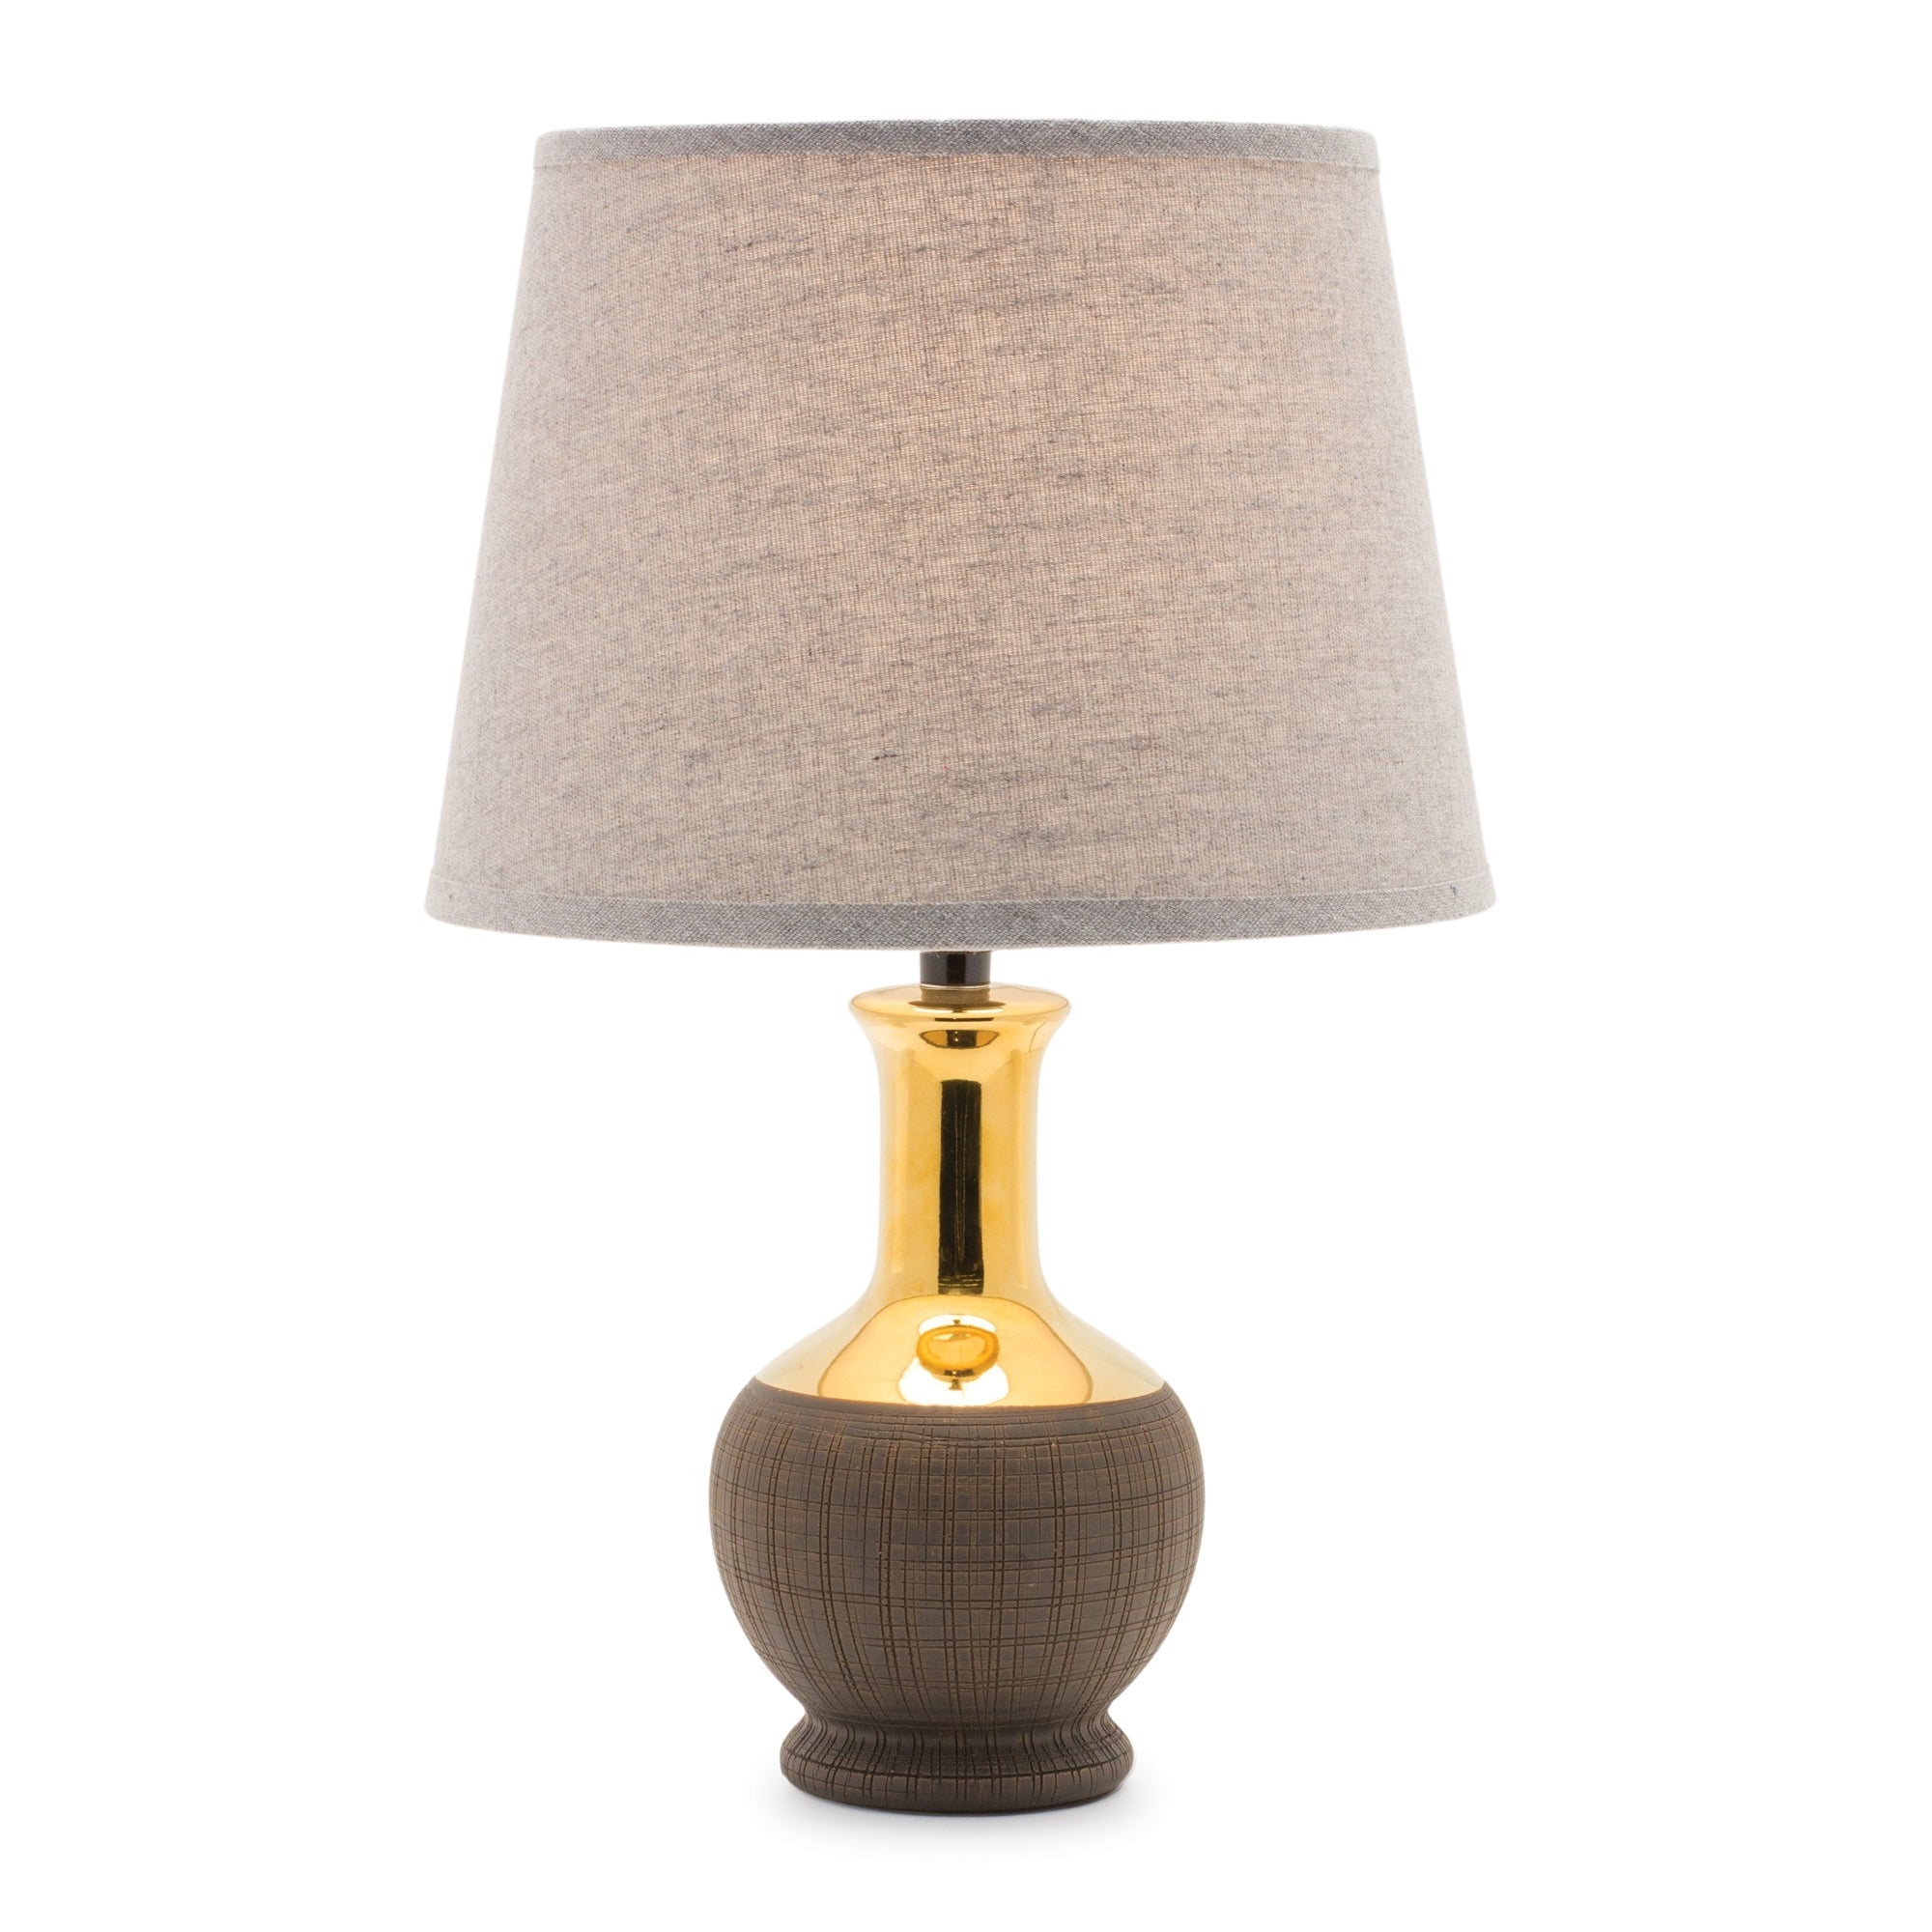 Two Tone Ceramic Lamp 17"H